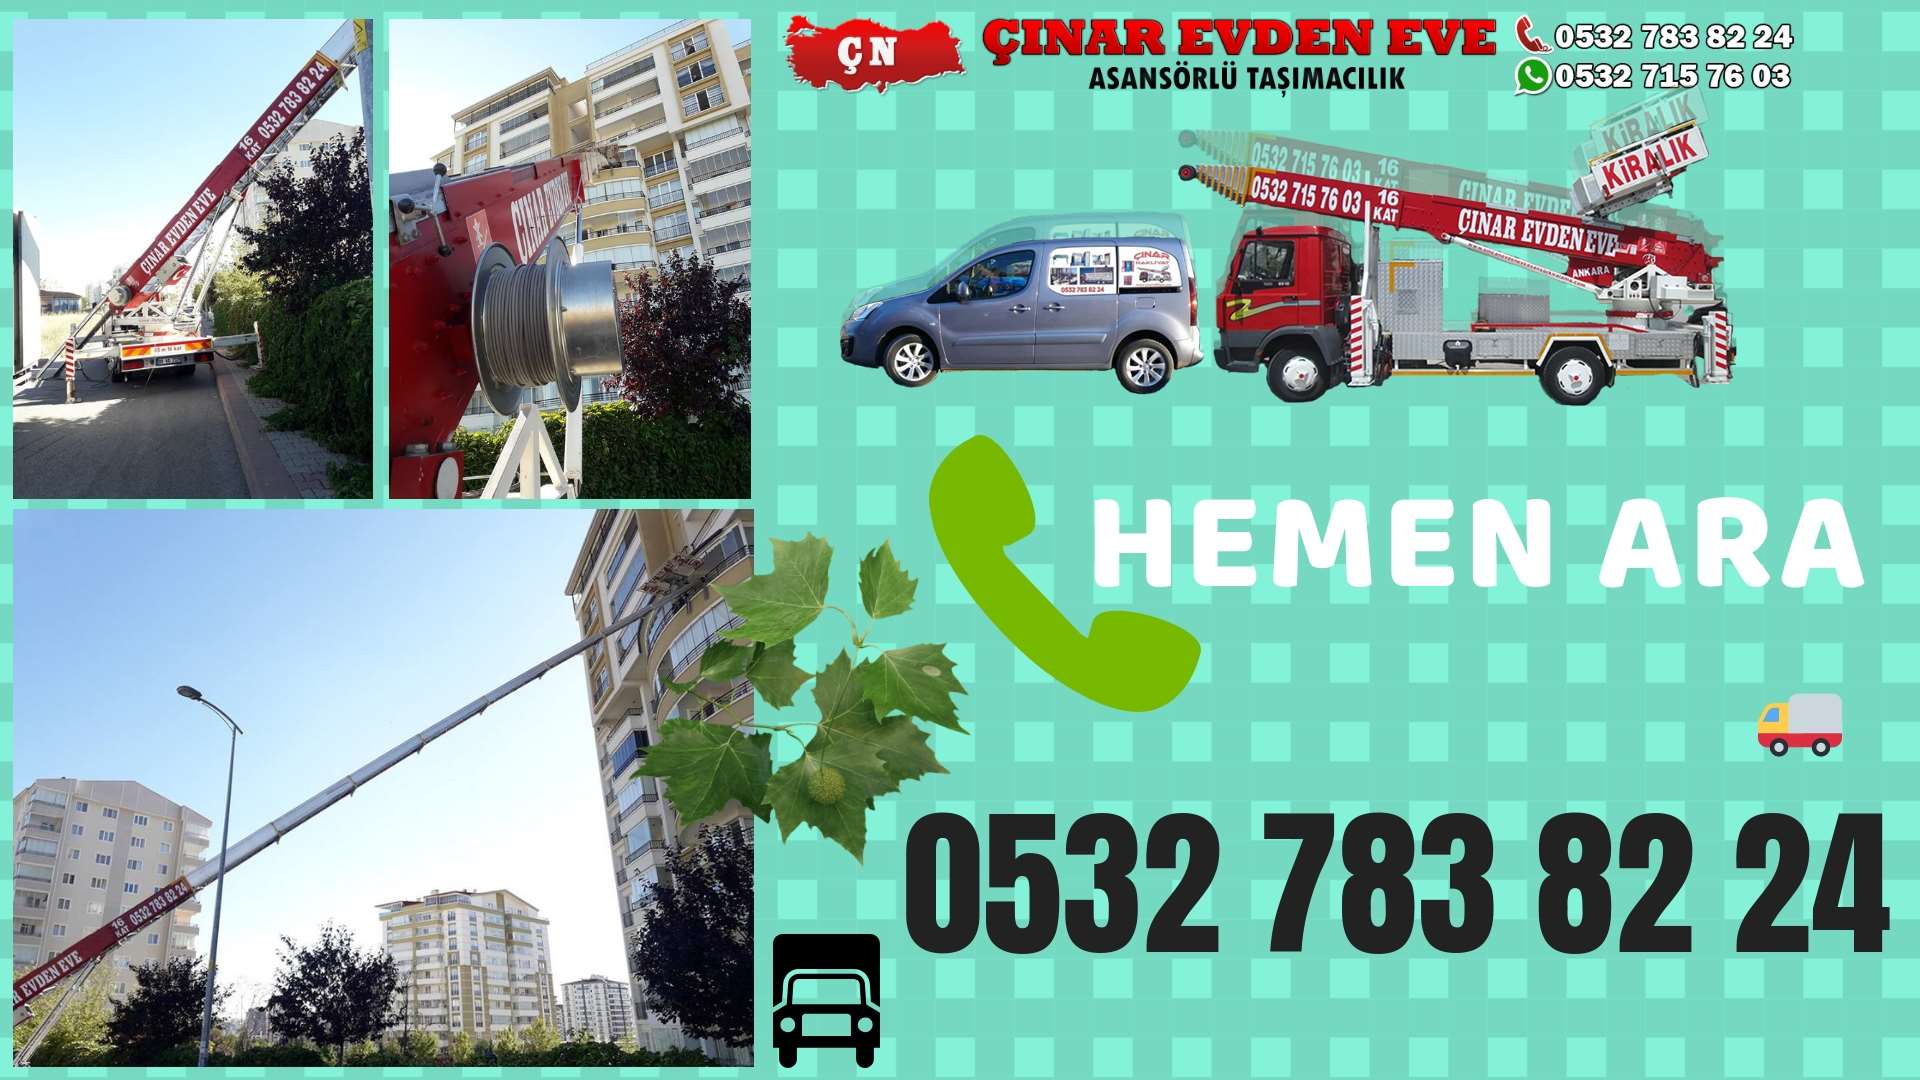 Ankara Yenimahalle Evden eve ev taşıma sincan nakliye fiyatları 0532 715 76 03